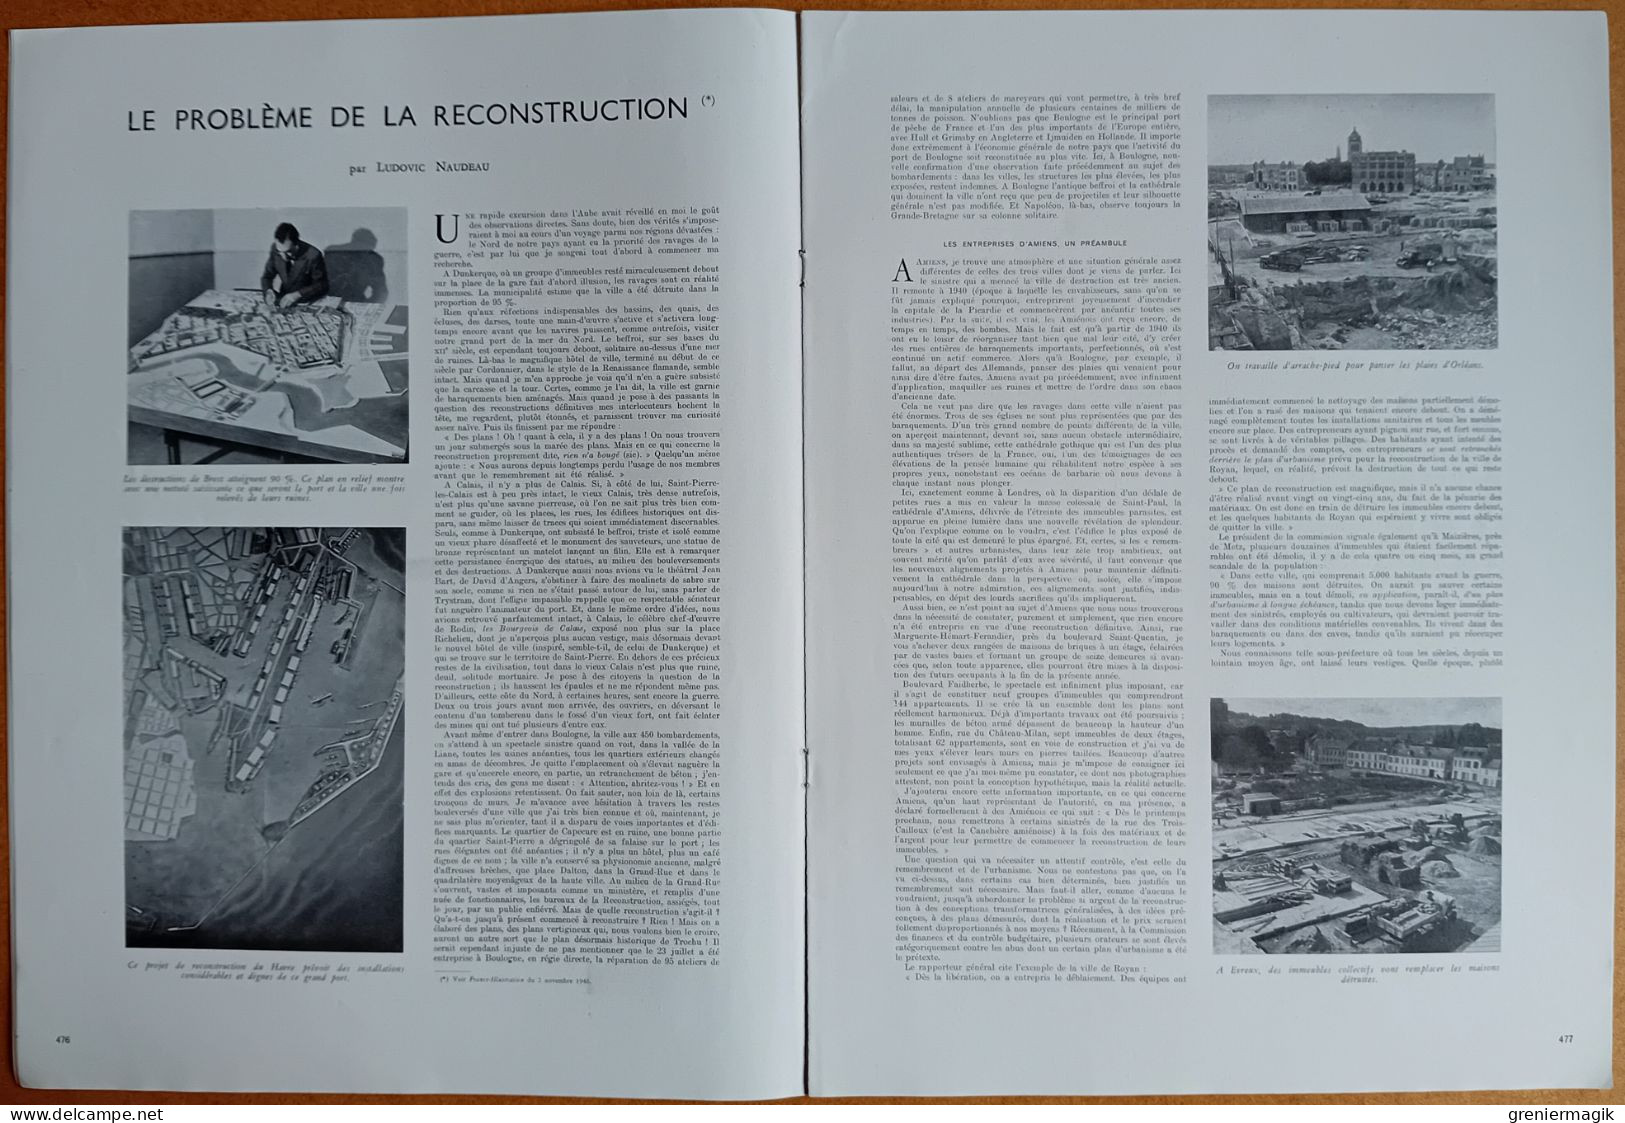 France Illustration N°58 09/11/1946 La Campagne électorale à Paris/Tunisie/Assemblée Générale De L'ONU/De Soubiran - Informations Générales